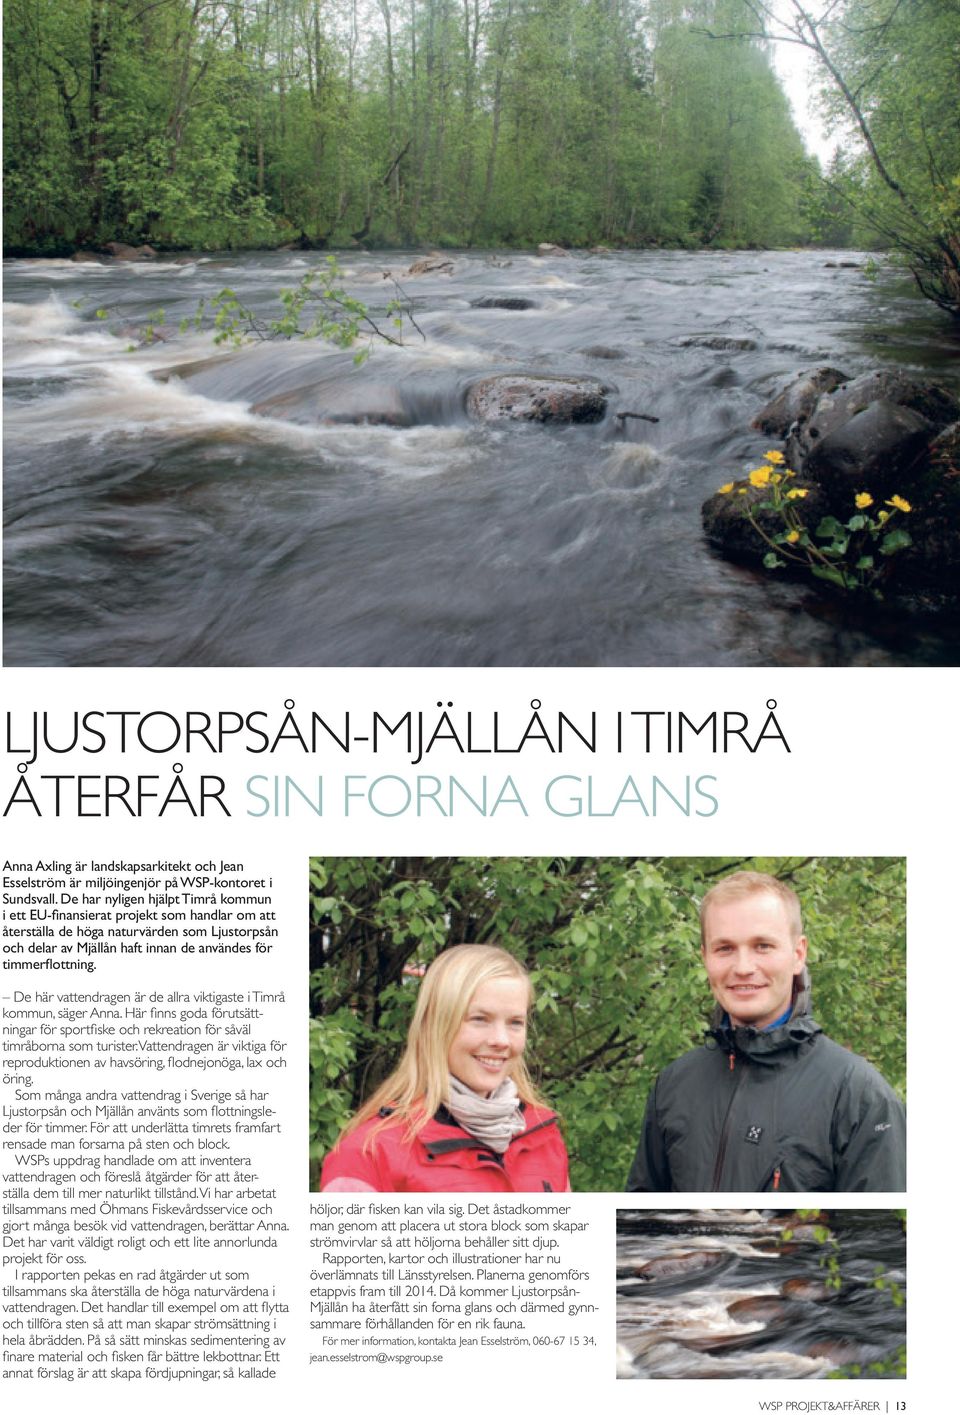 De här vattendragen är de allra viktigaste i Timrå kommun, säger Anna. Här finns goda förutsättningar för sportfiske och rekreation för såväl timråborna som turister.